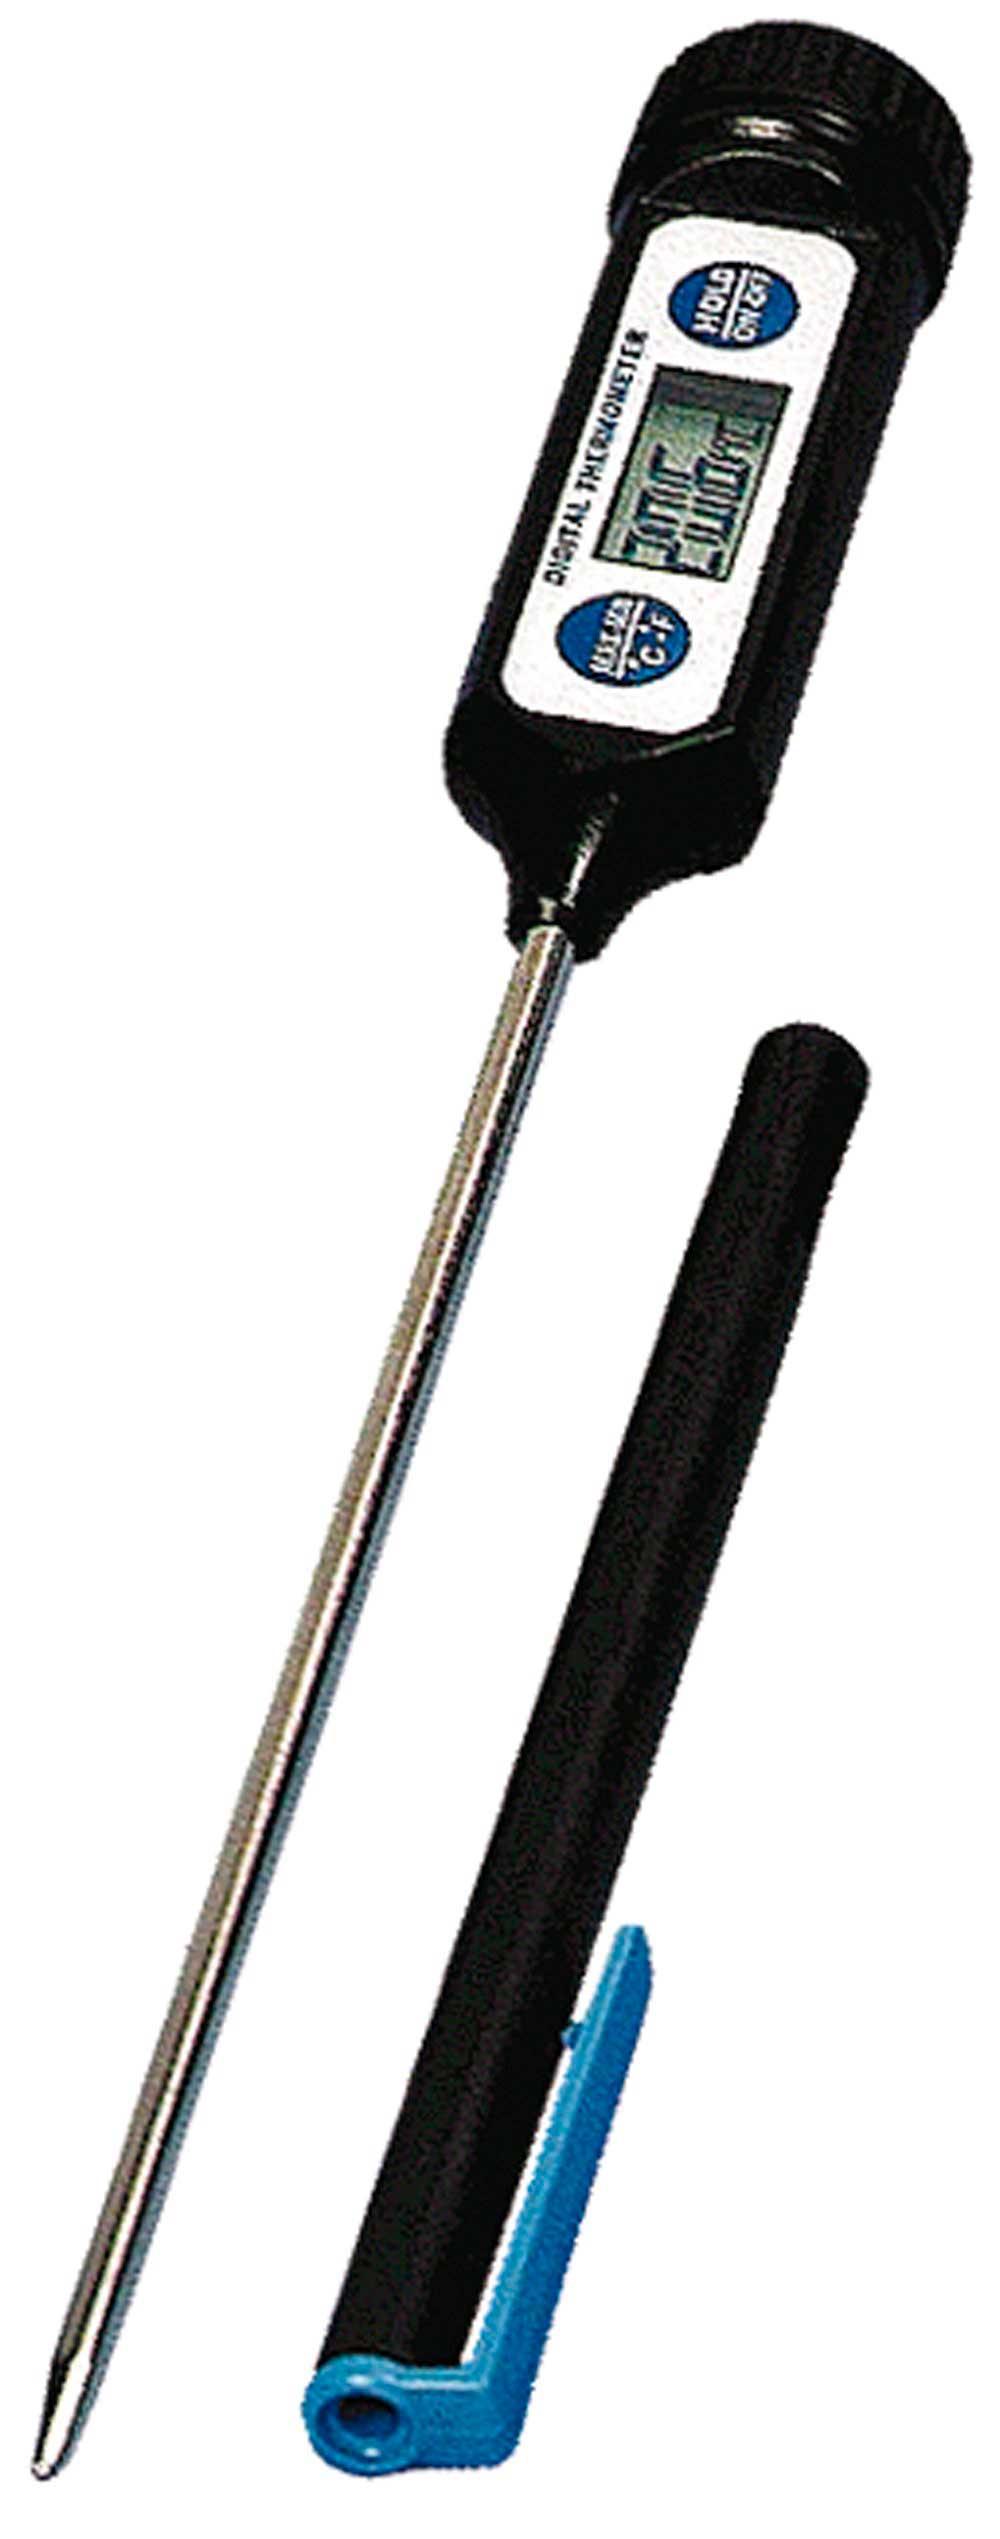 Termómetro digital Amarell Maxi Pen -50+200ºC. Resolución 0.1ºC. AMARELL. 